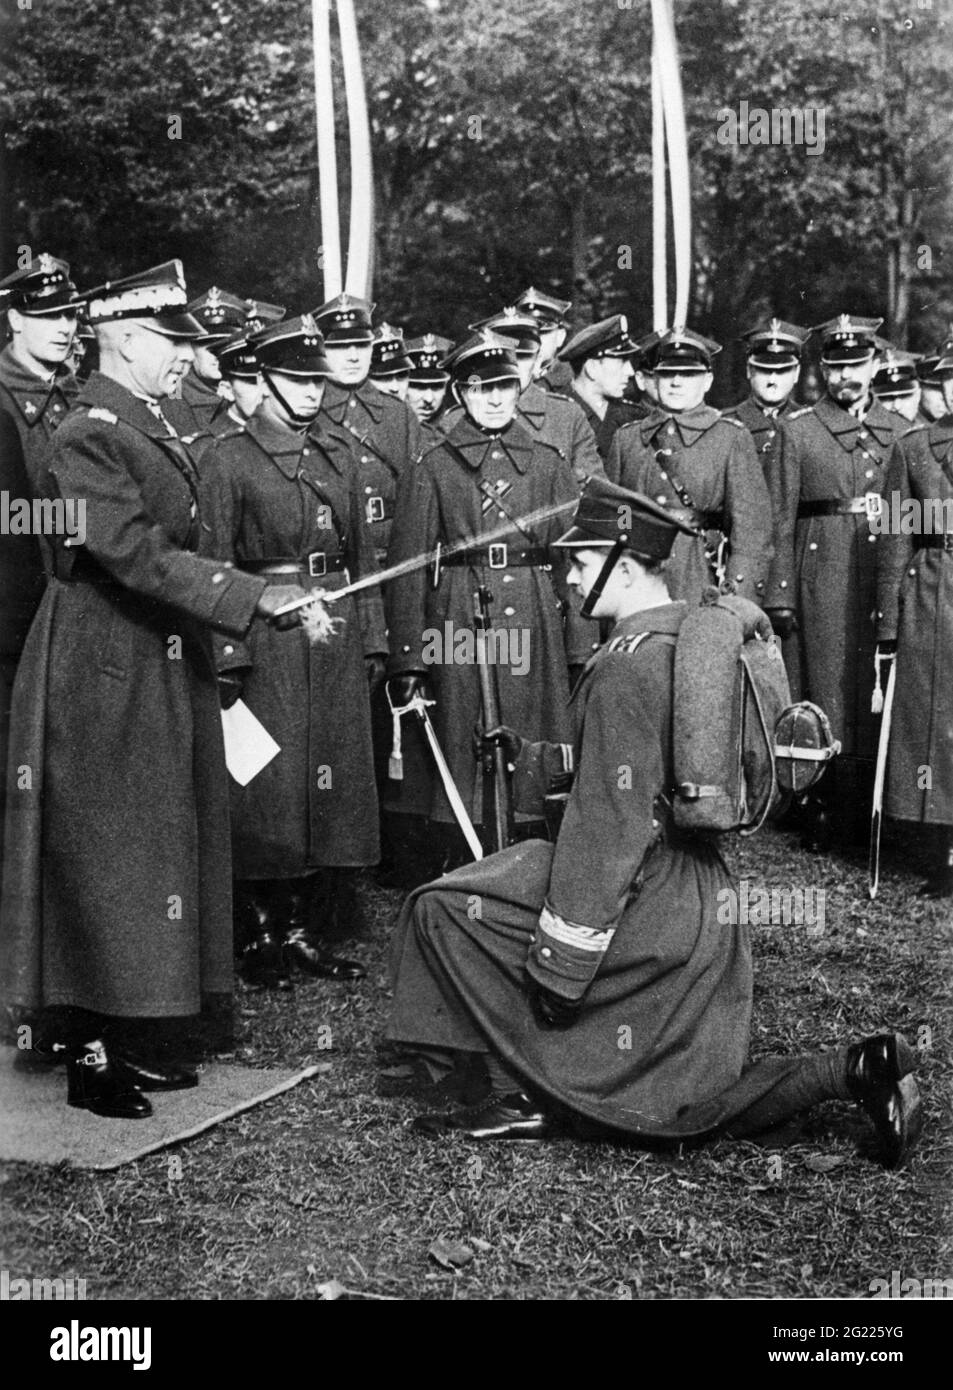 Militar, Polonia, los oficiales aspirantes se promueve a oficial, 1930s, 30s, soldados, 20th siglo, Histórico, histórico, SÓLO PARA USO EDITORIAL Foto de stock